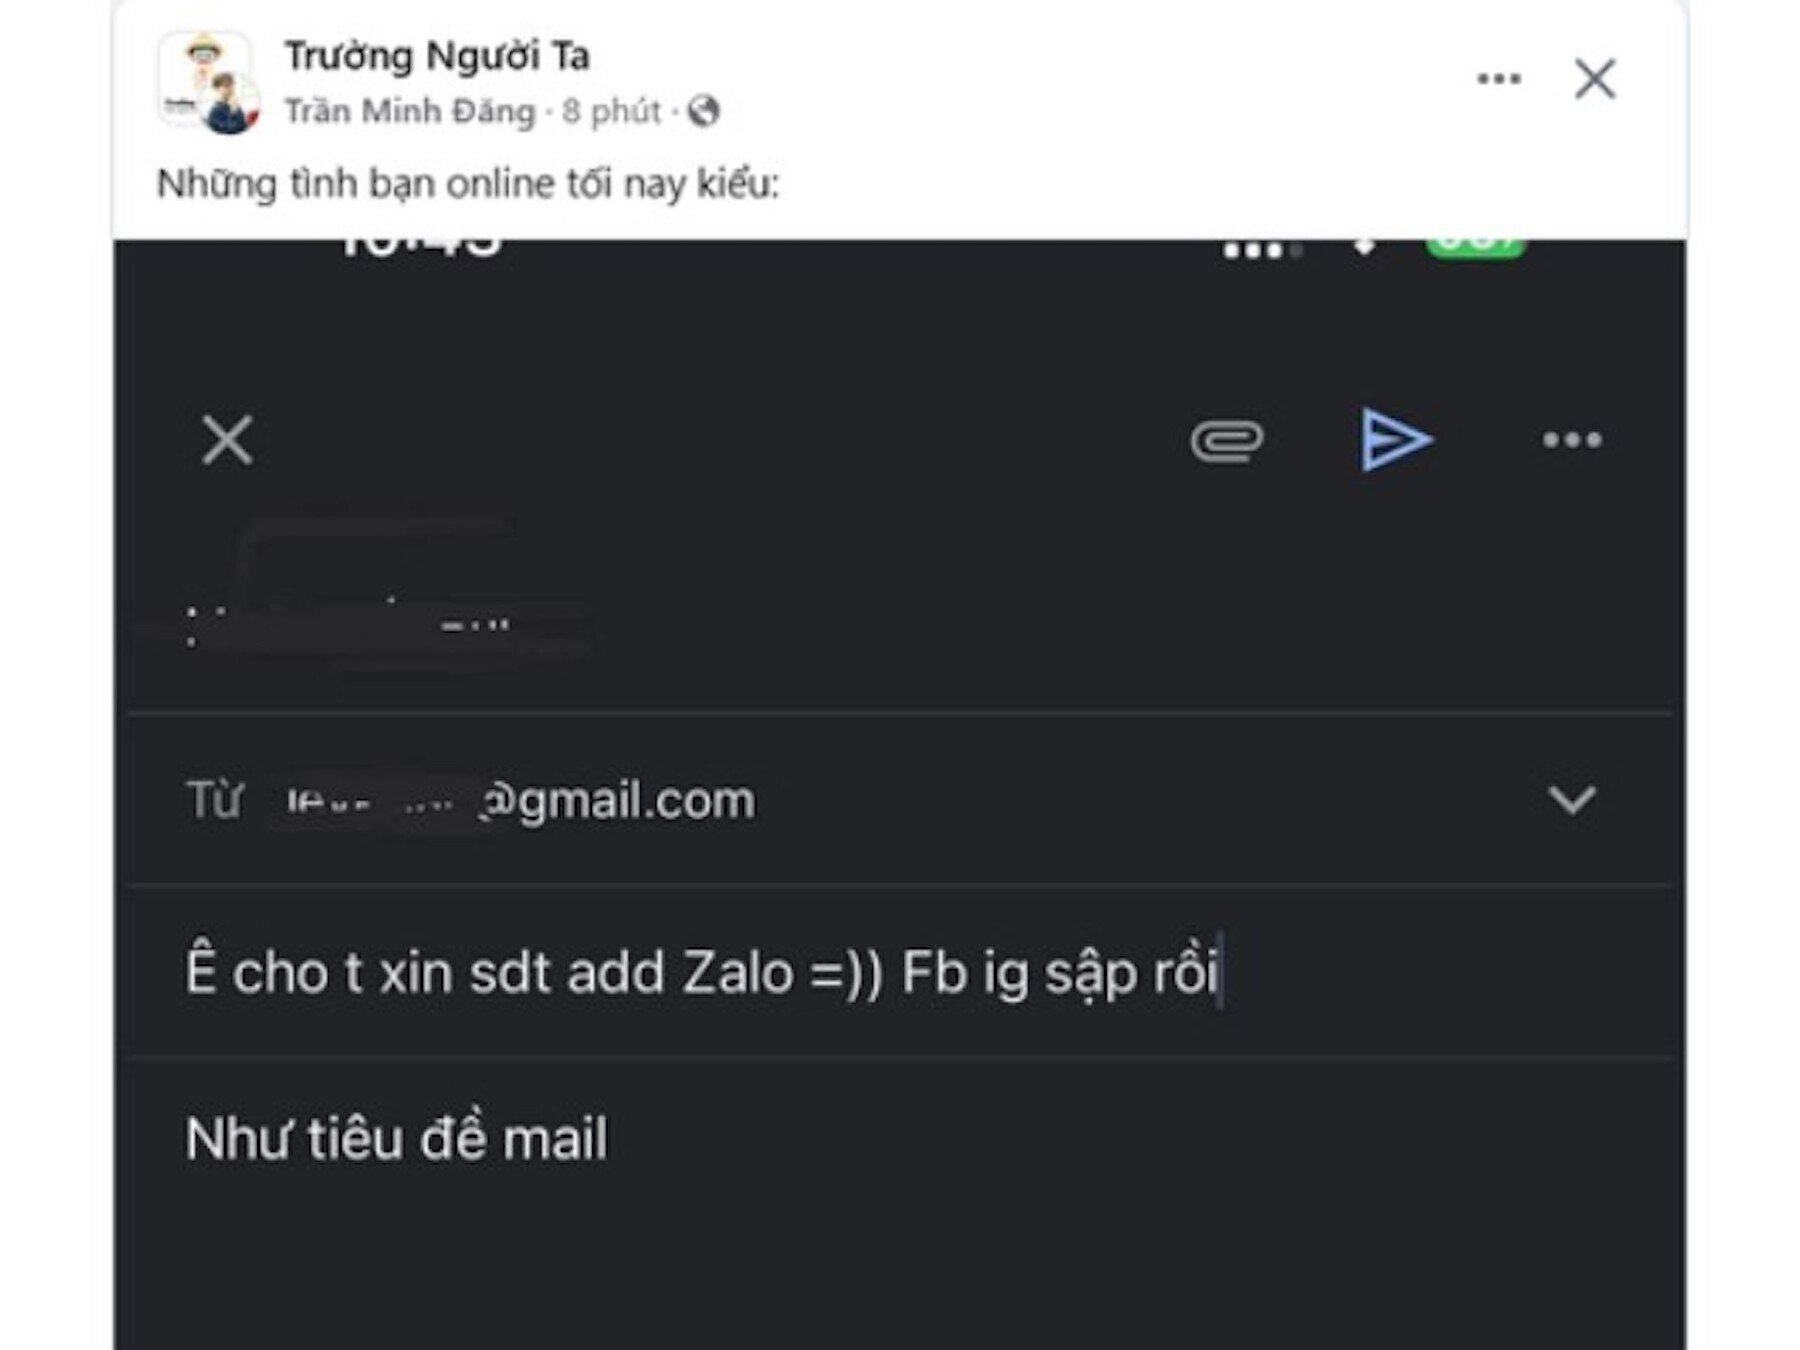 Có người còn dùng email để xin số điện thoại kết bạn Zalo. (Ảnh: Trường Người Ta)